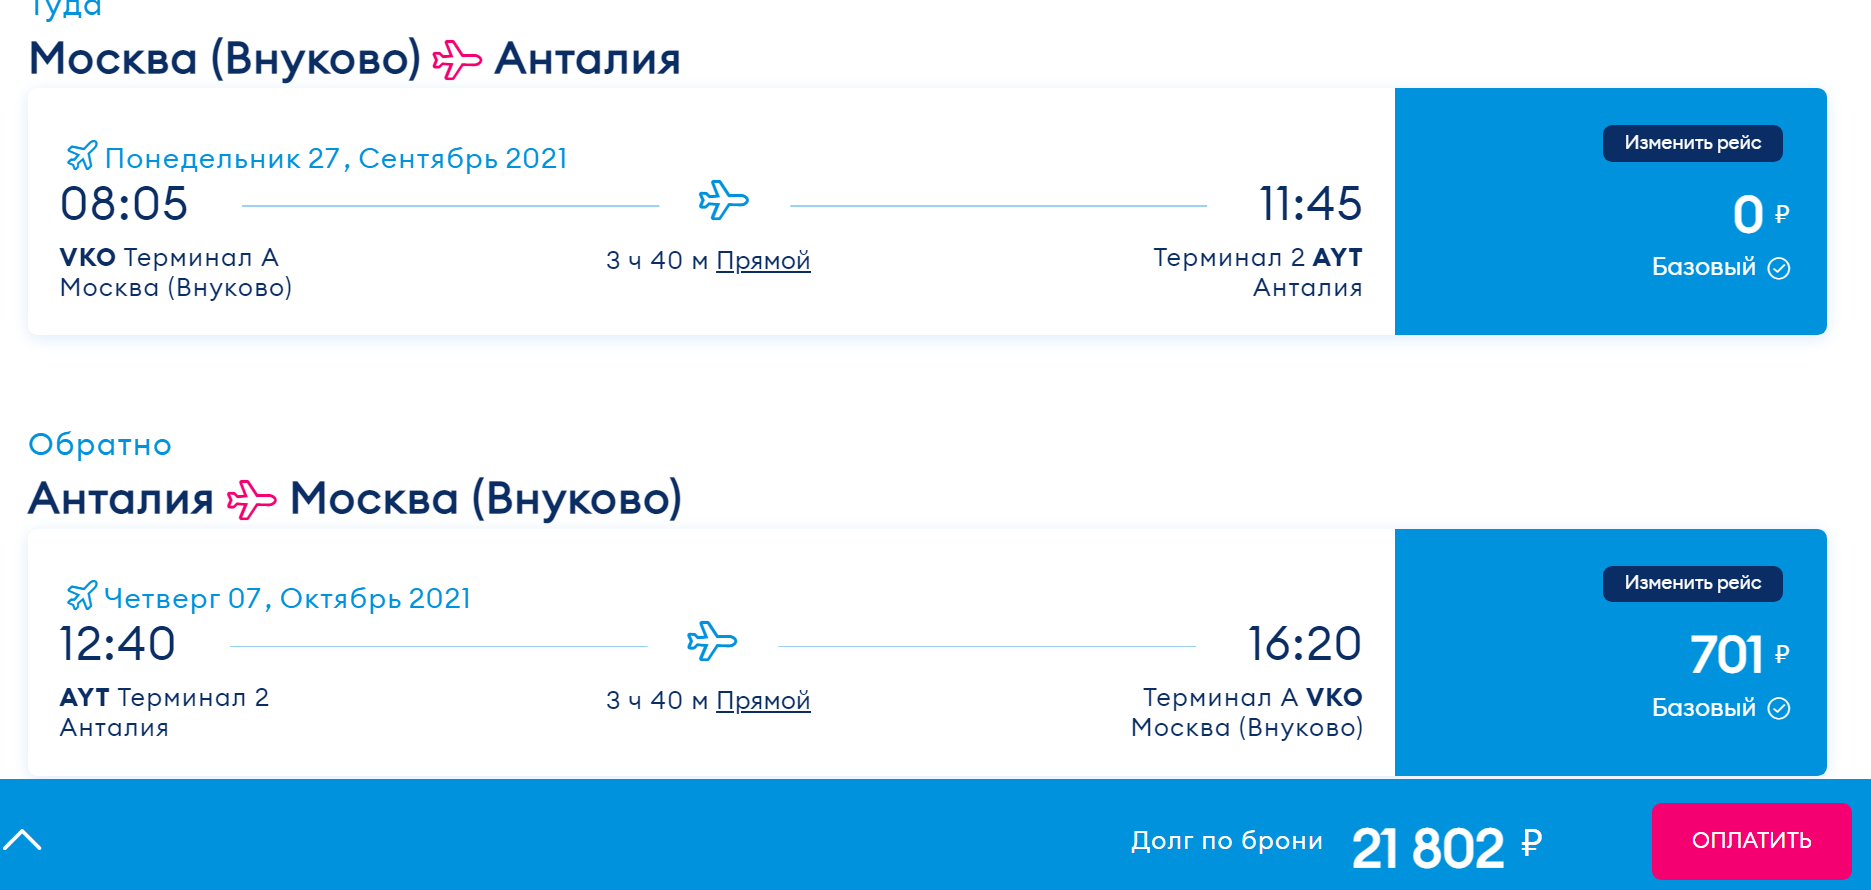 Купить авиабилеты на победу из москвы билеты иркутск адлер на самолет